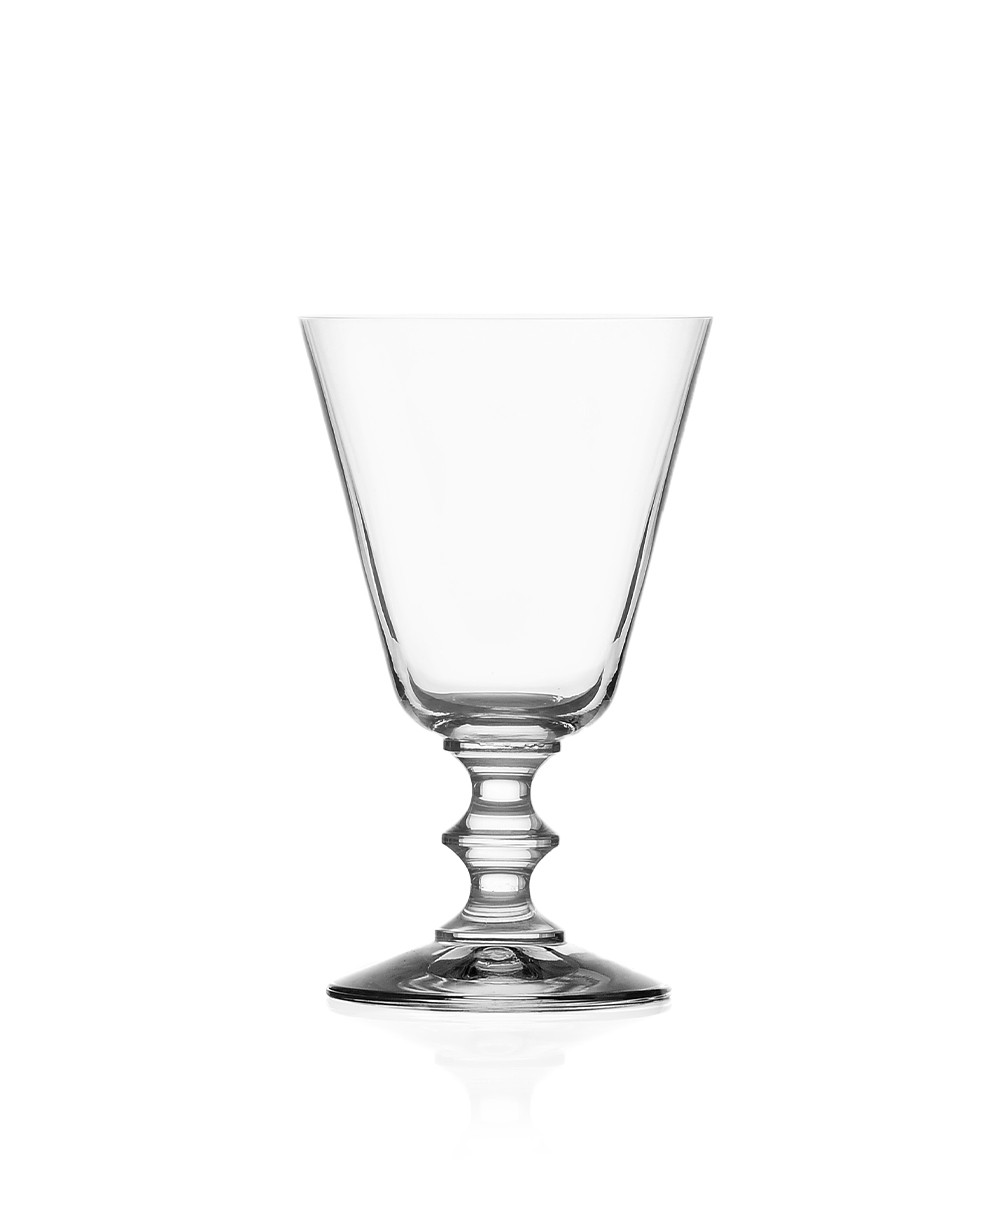 Produktbild "Parigi Wasser Glas" des Herstellers Ichendorf Milano im RAUM Conceptstore